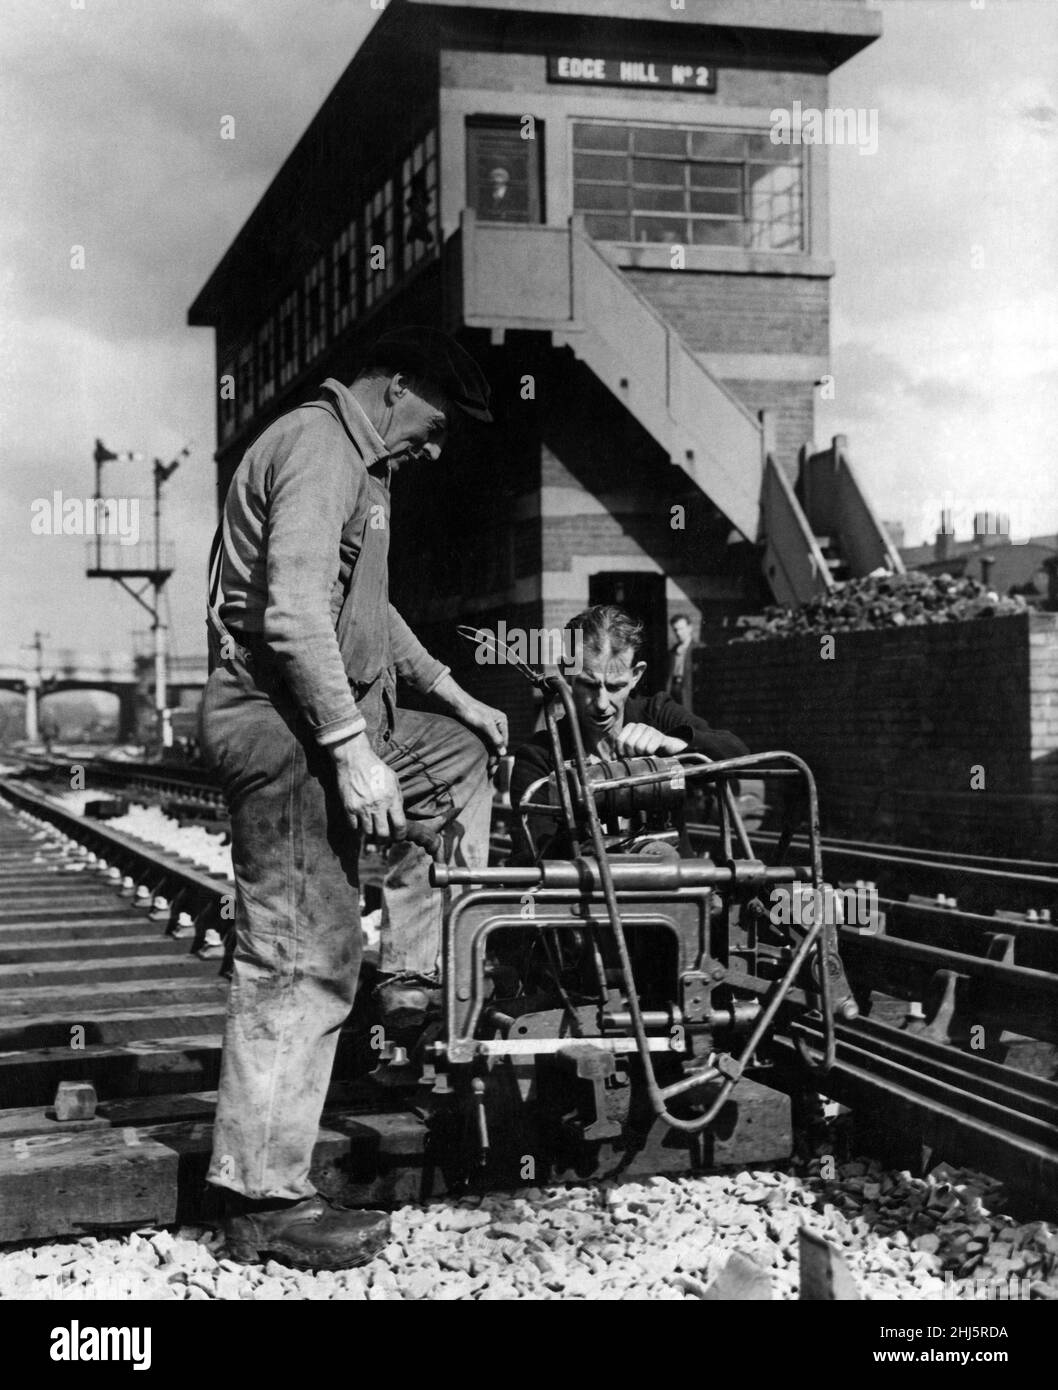 Liverpool Lime Street Bahnhof Verbesserung Schema. Zwei Arbeiter, die Eisenbahnsäger und Bohrer sind, schneiden eine Strecke ein, die mit dem Schnelldurchgang von der Lime Street an einem Punkt östlich der Edge Hill Station verbunden wird. August 1960. Stockfoto